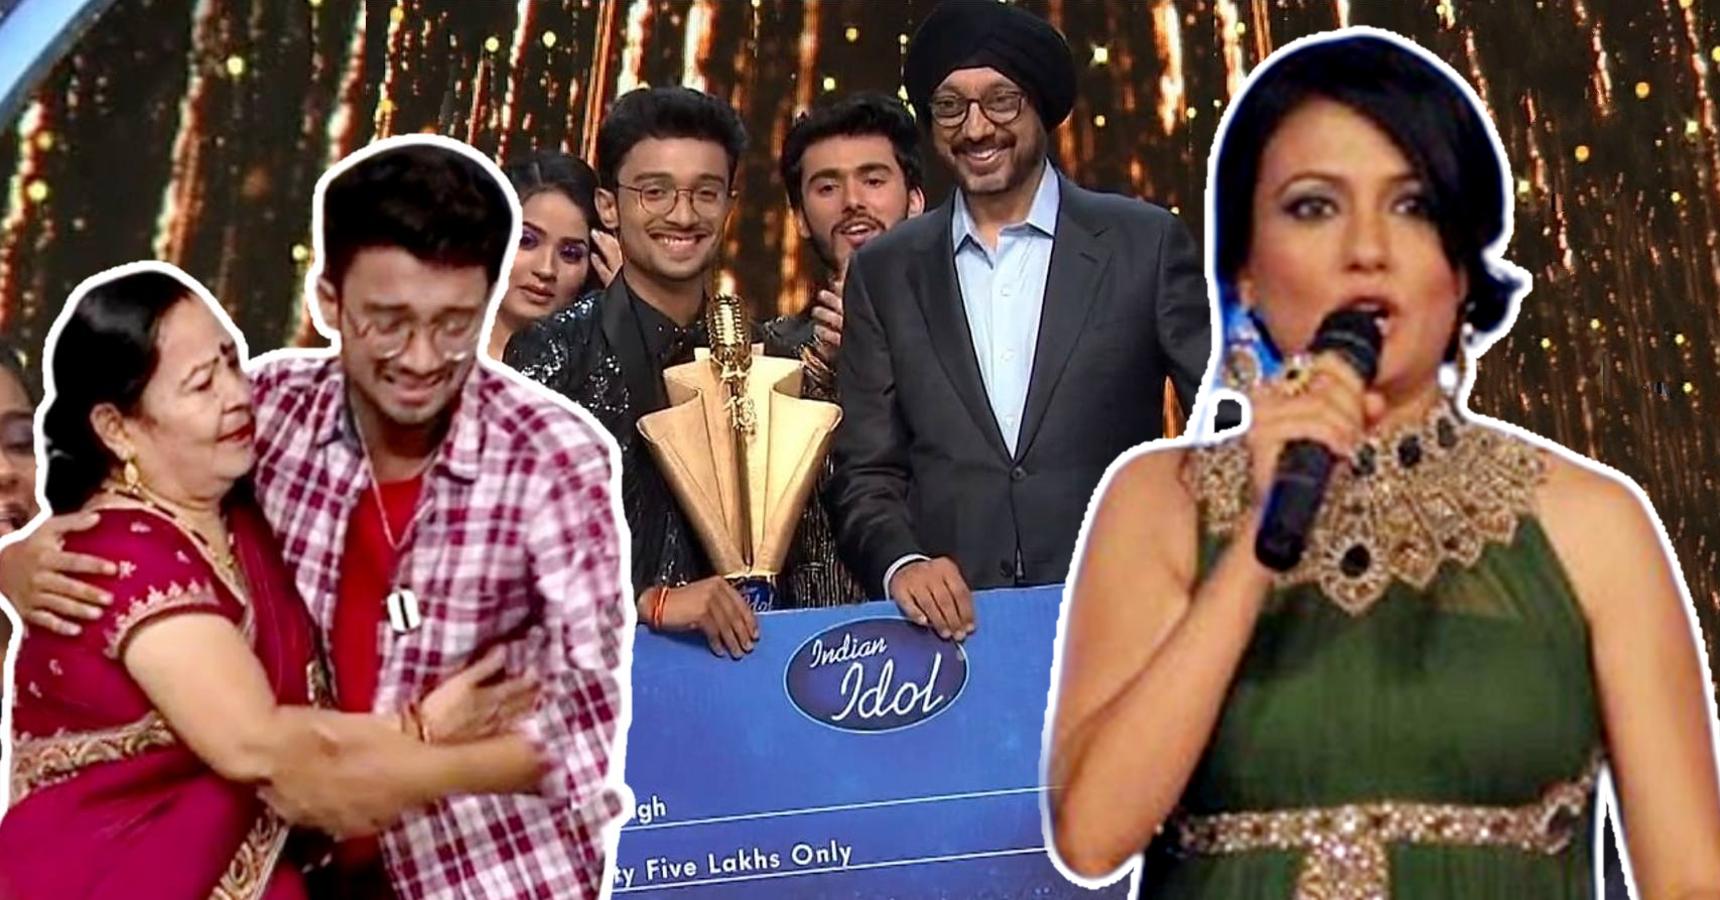 Mini Mathur revealed the secret behind Indian Idol